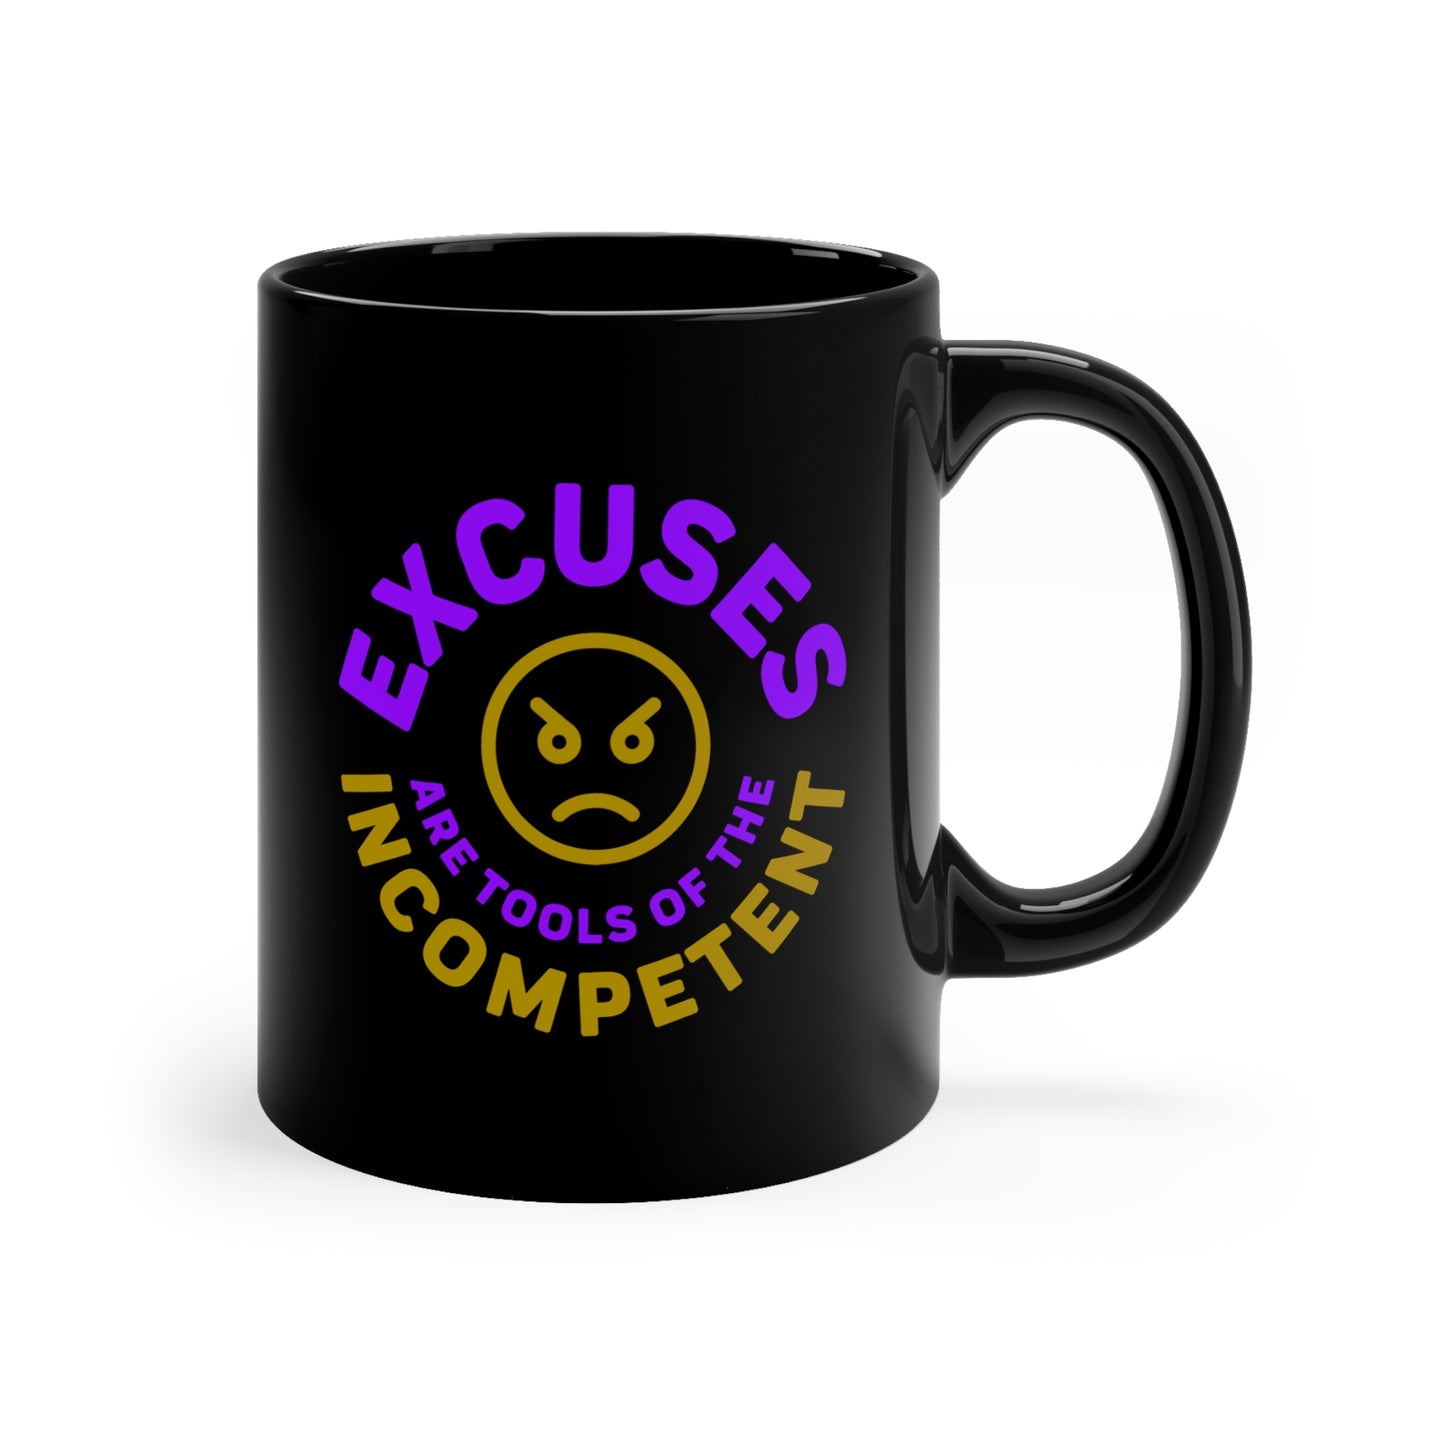 Excuses Mug - Purple + Old Gold on Black